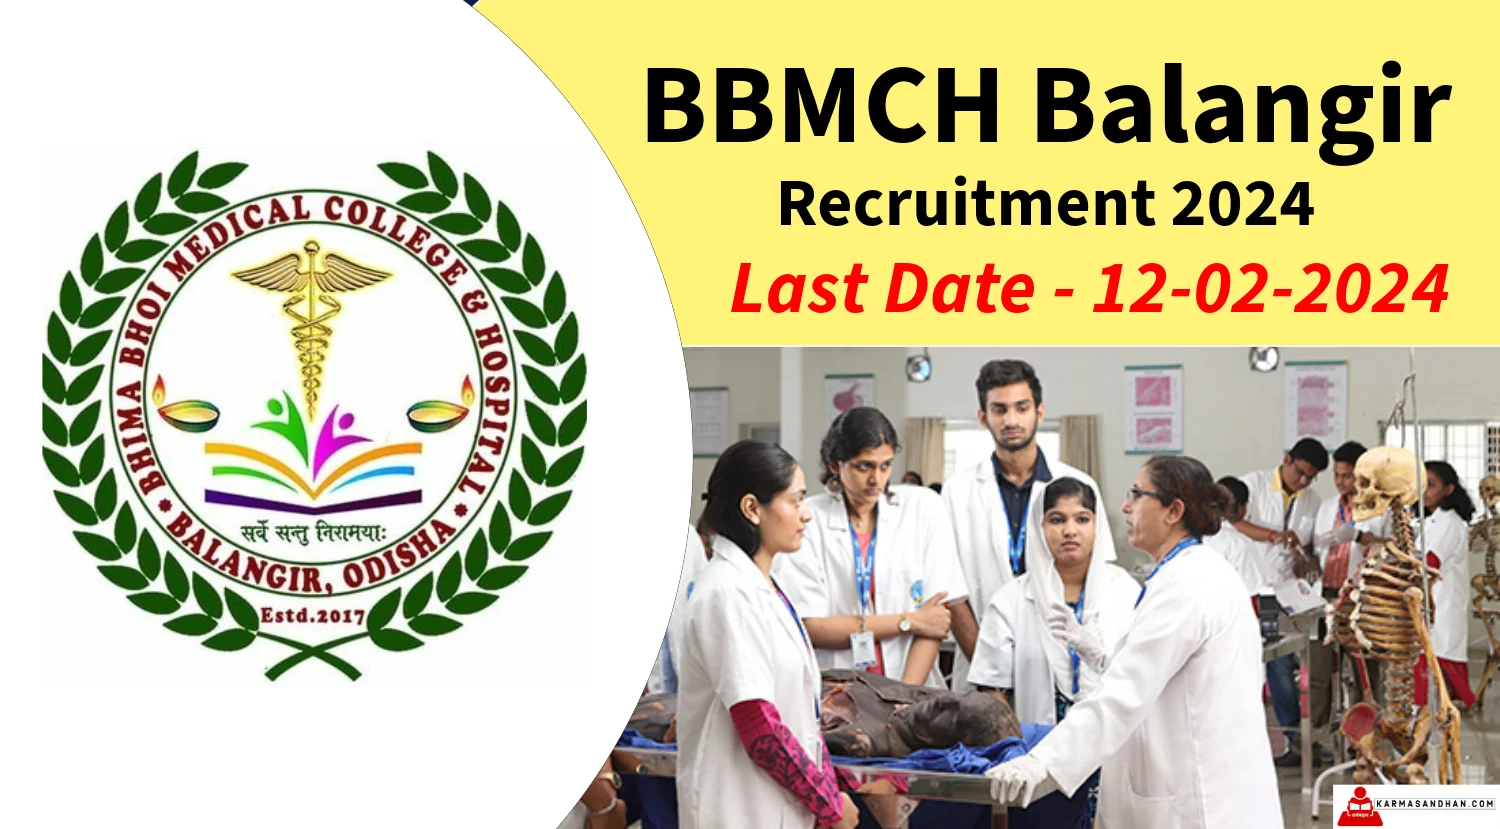 BBMCH Balangir Recruitment 2024 Notification out